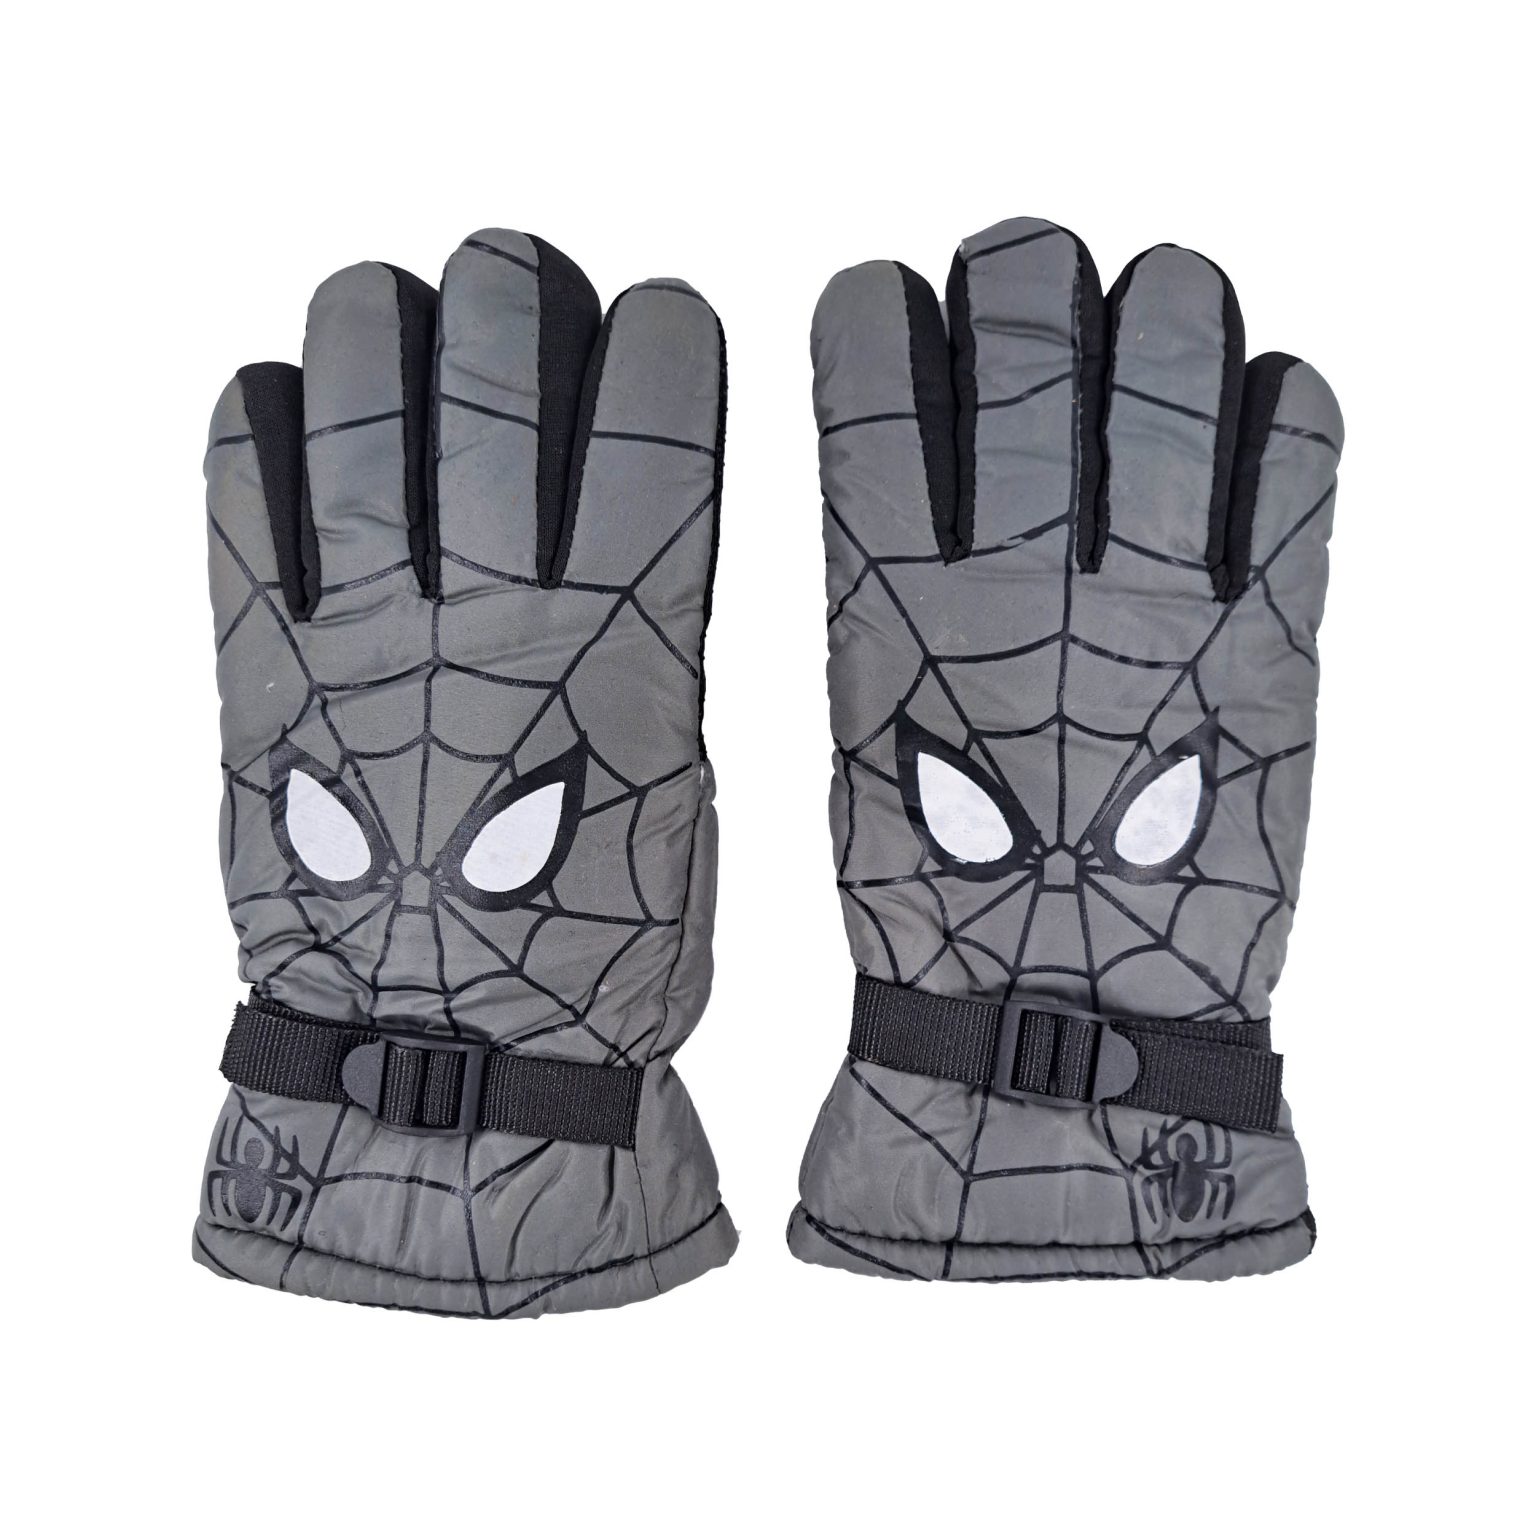 دستکش بچگانه طرح مرد عنکبوتی رنگ طوسی